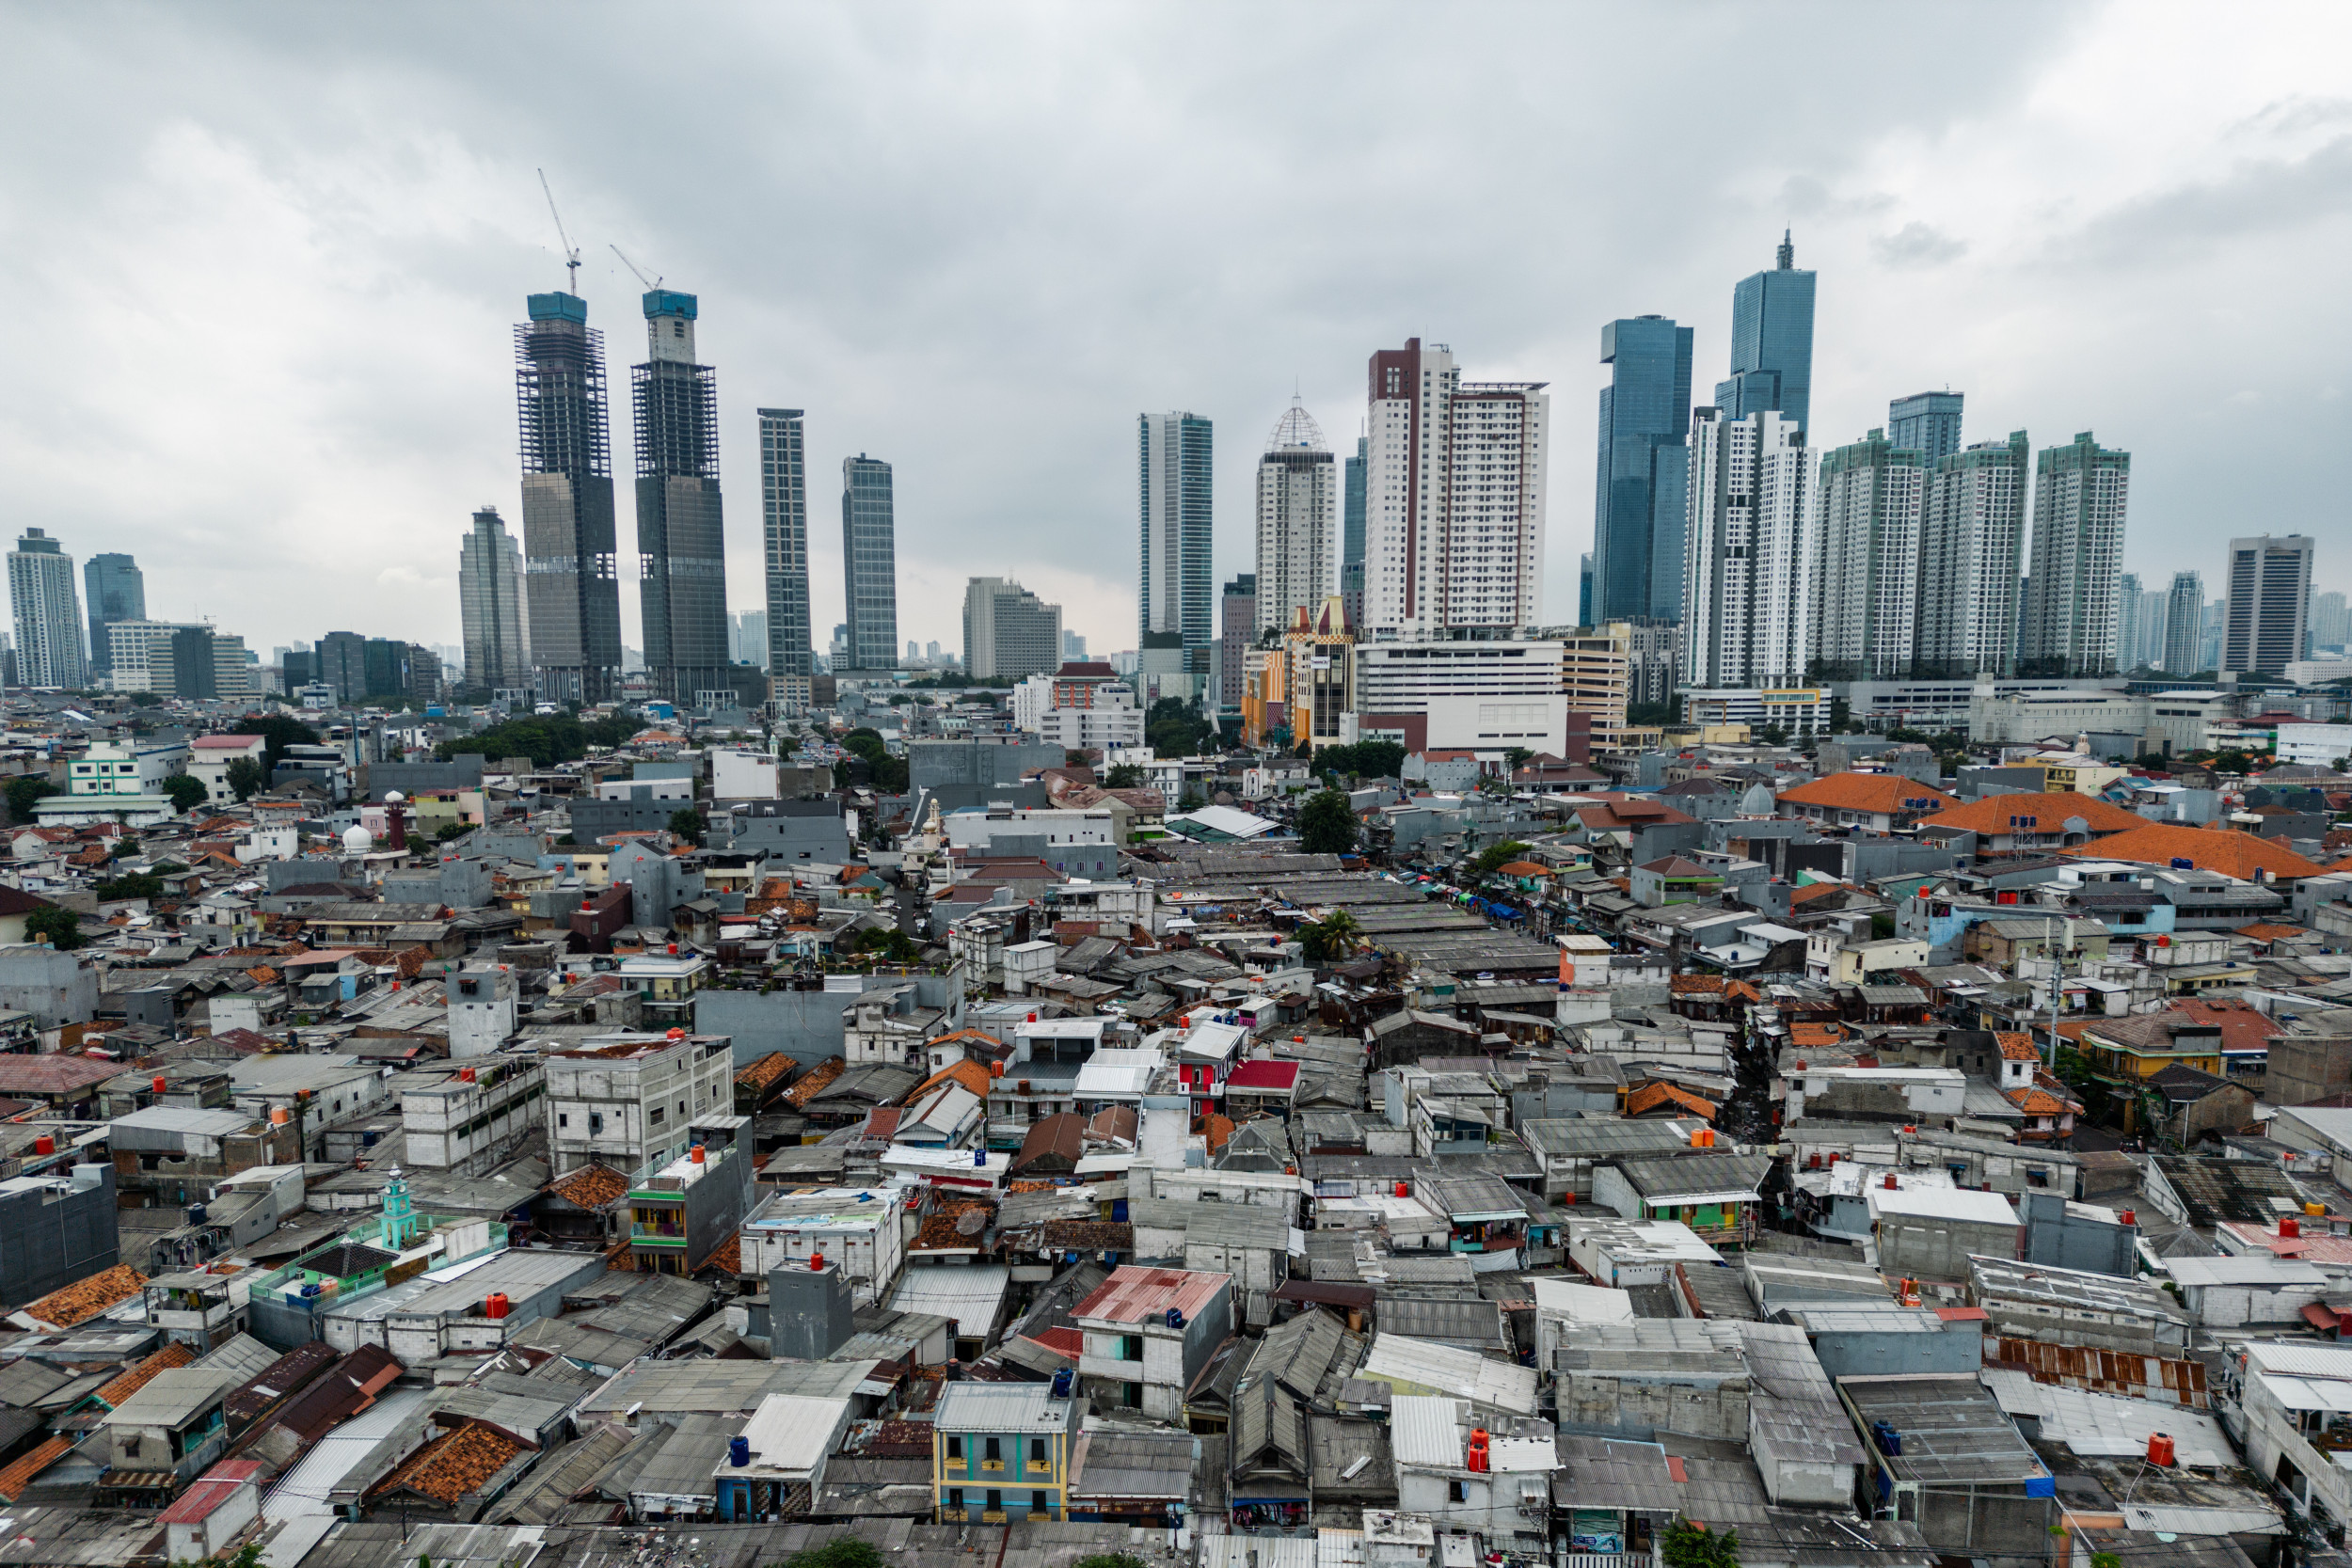 Citra satelit menunjukkan pembangunan ibu kota baru Indonesia